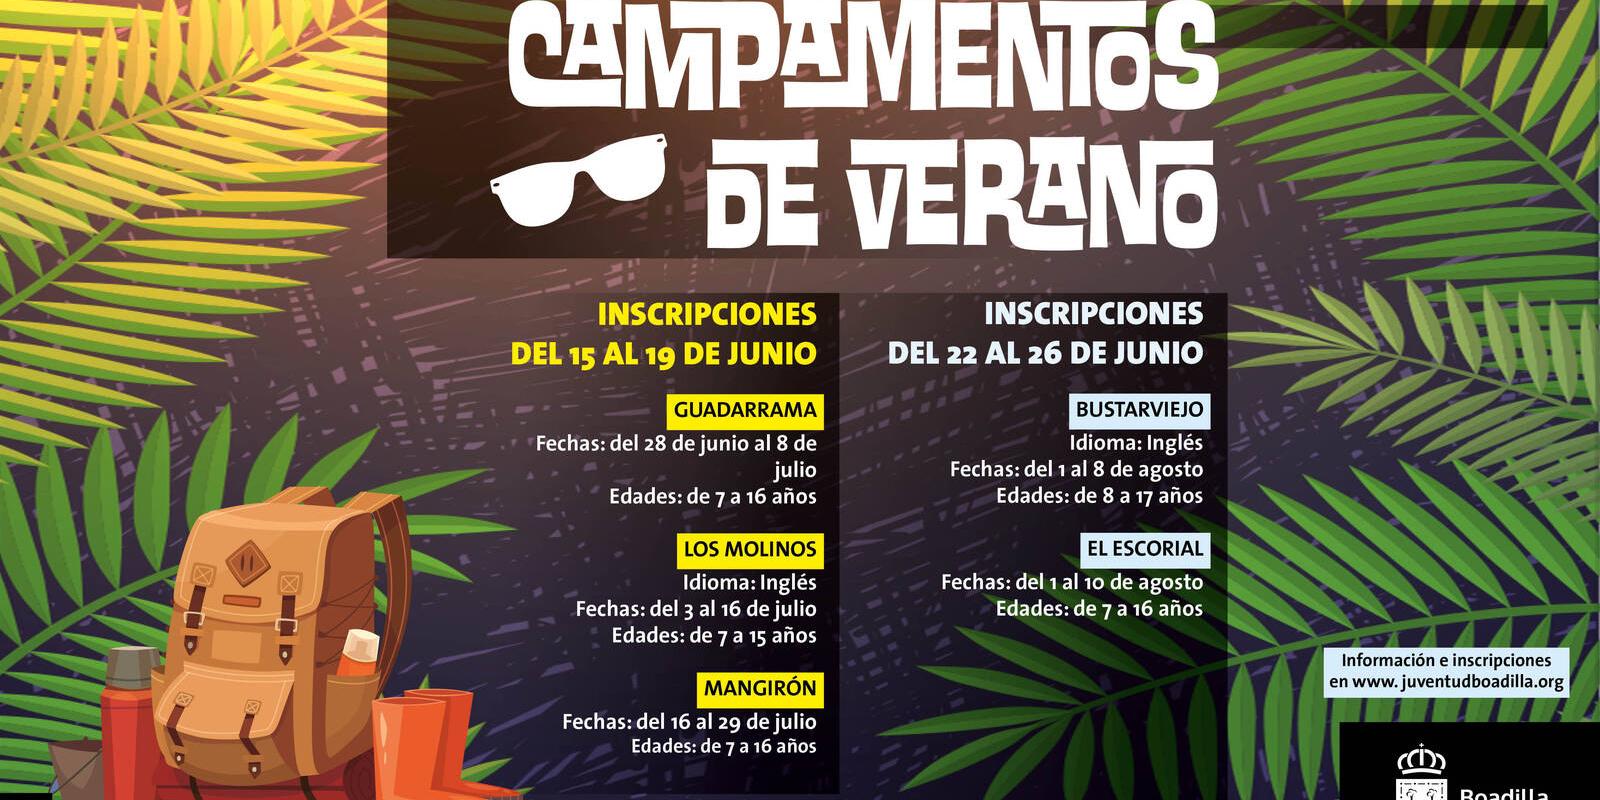 El Ayuntamiento de Boadilla organiza un campamento de verano dentro de la Comunidad de Madrid